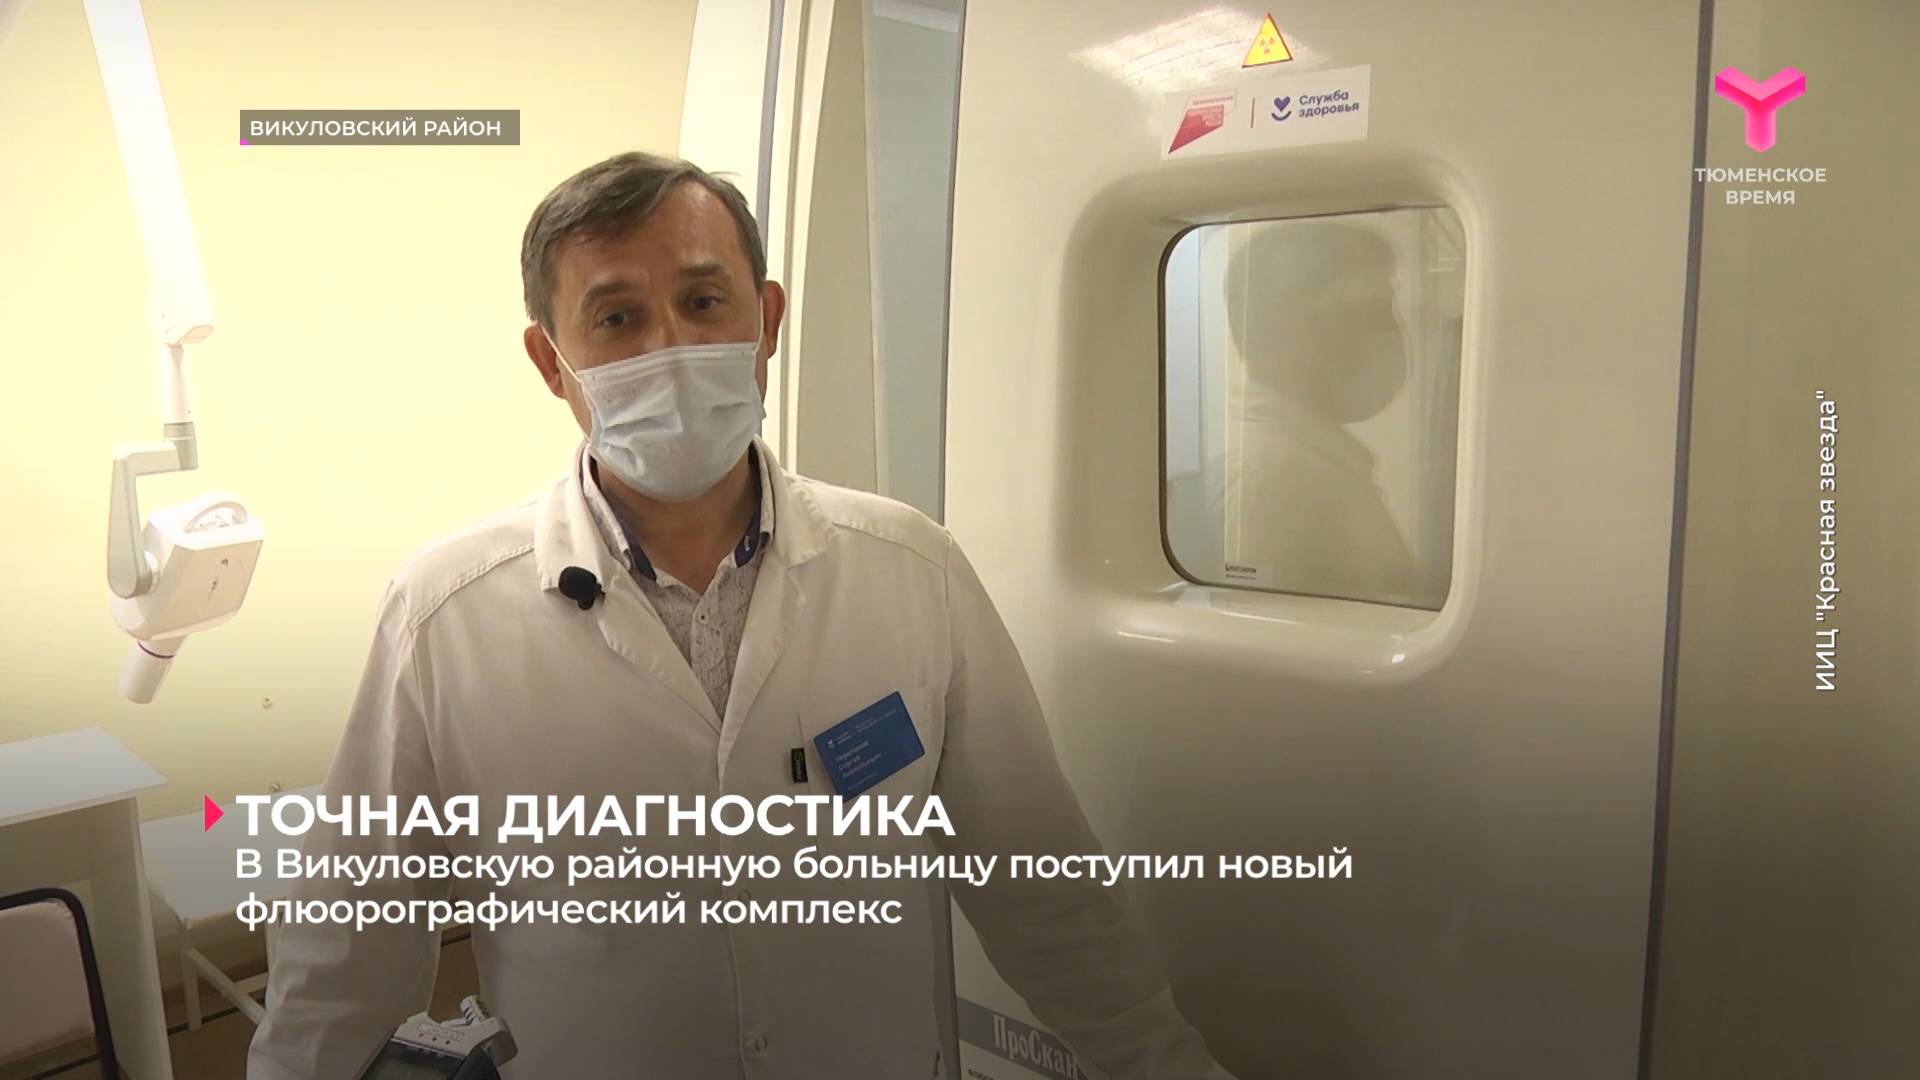 В Викуловскую районную больницу поступил новый флюорографический комплекс